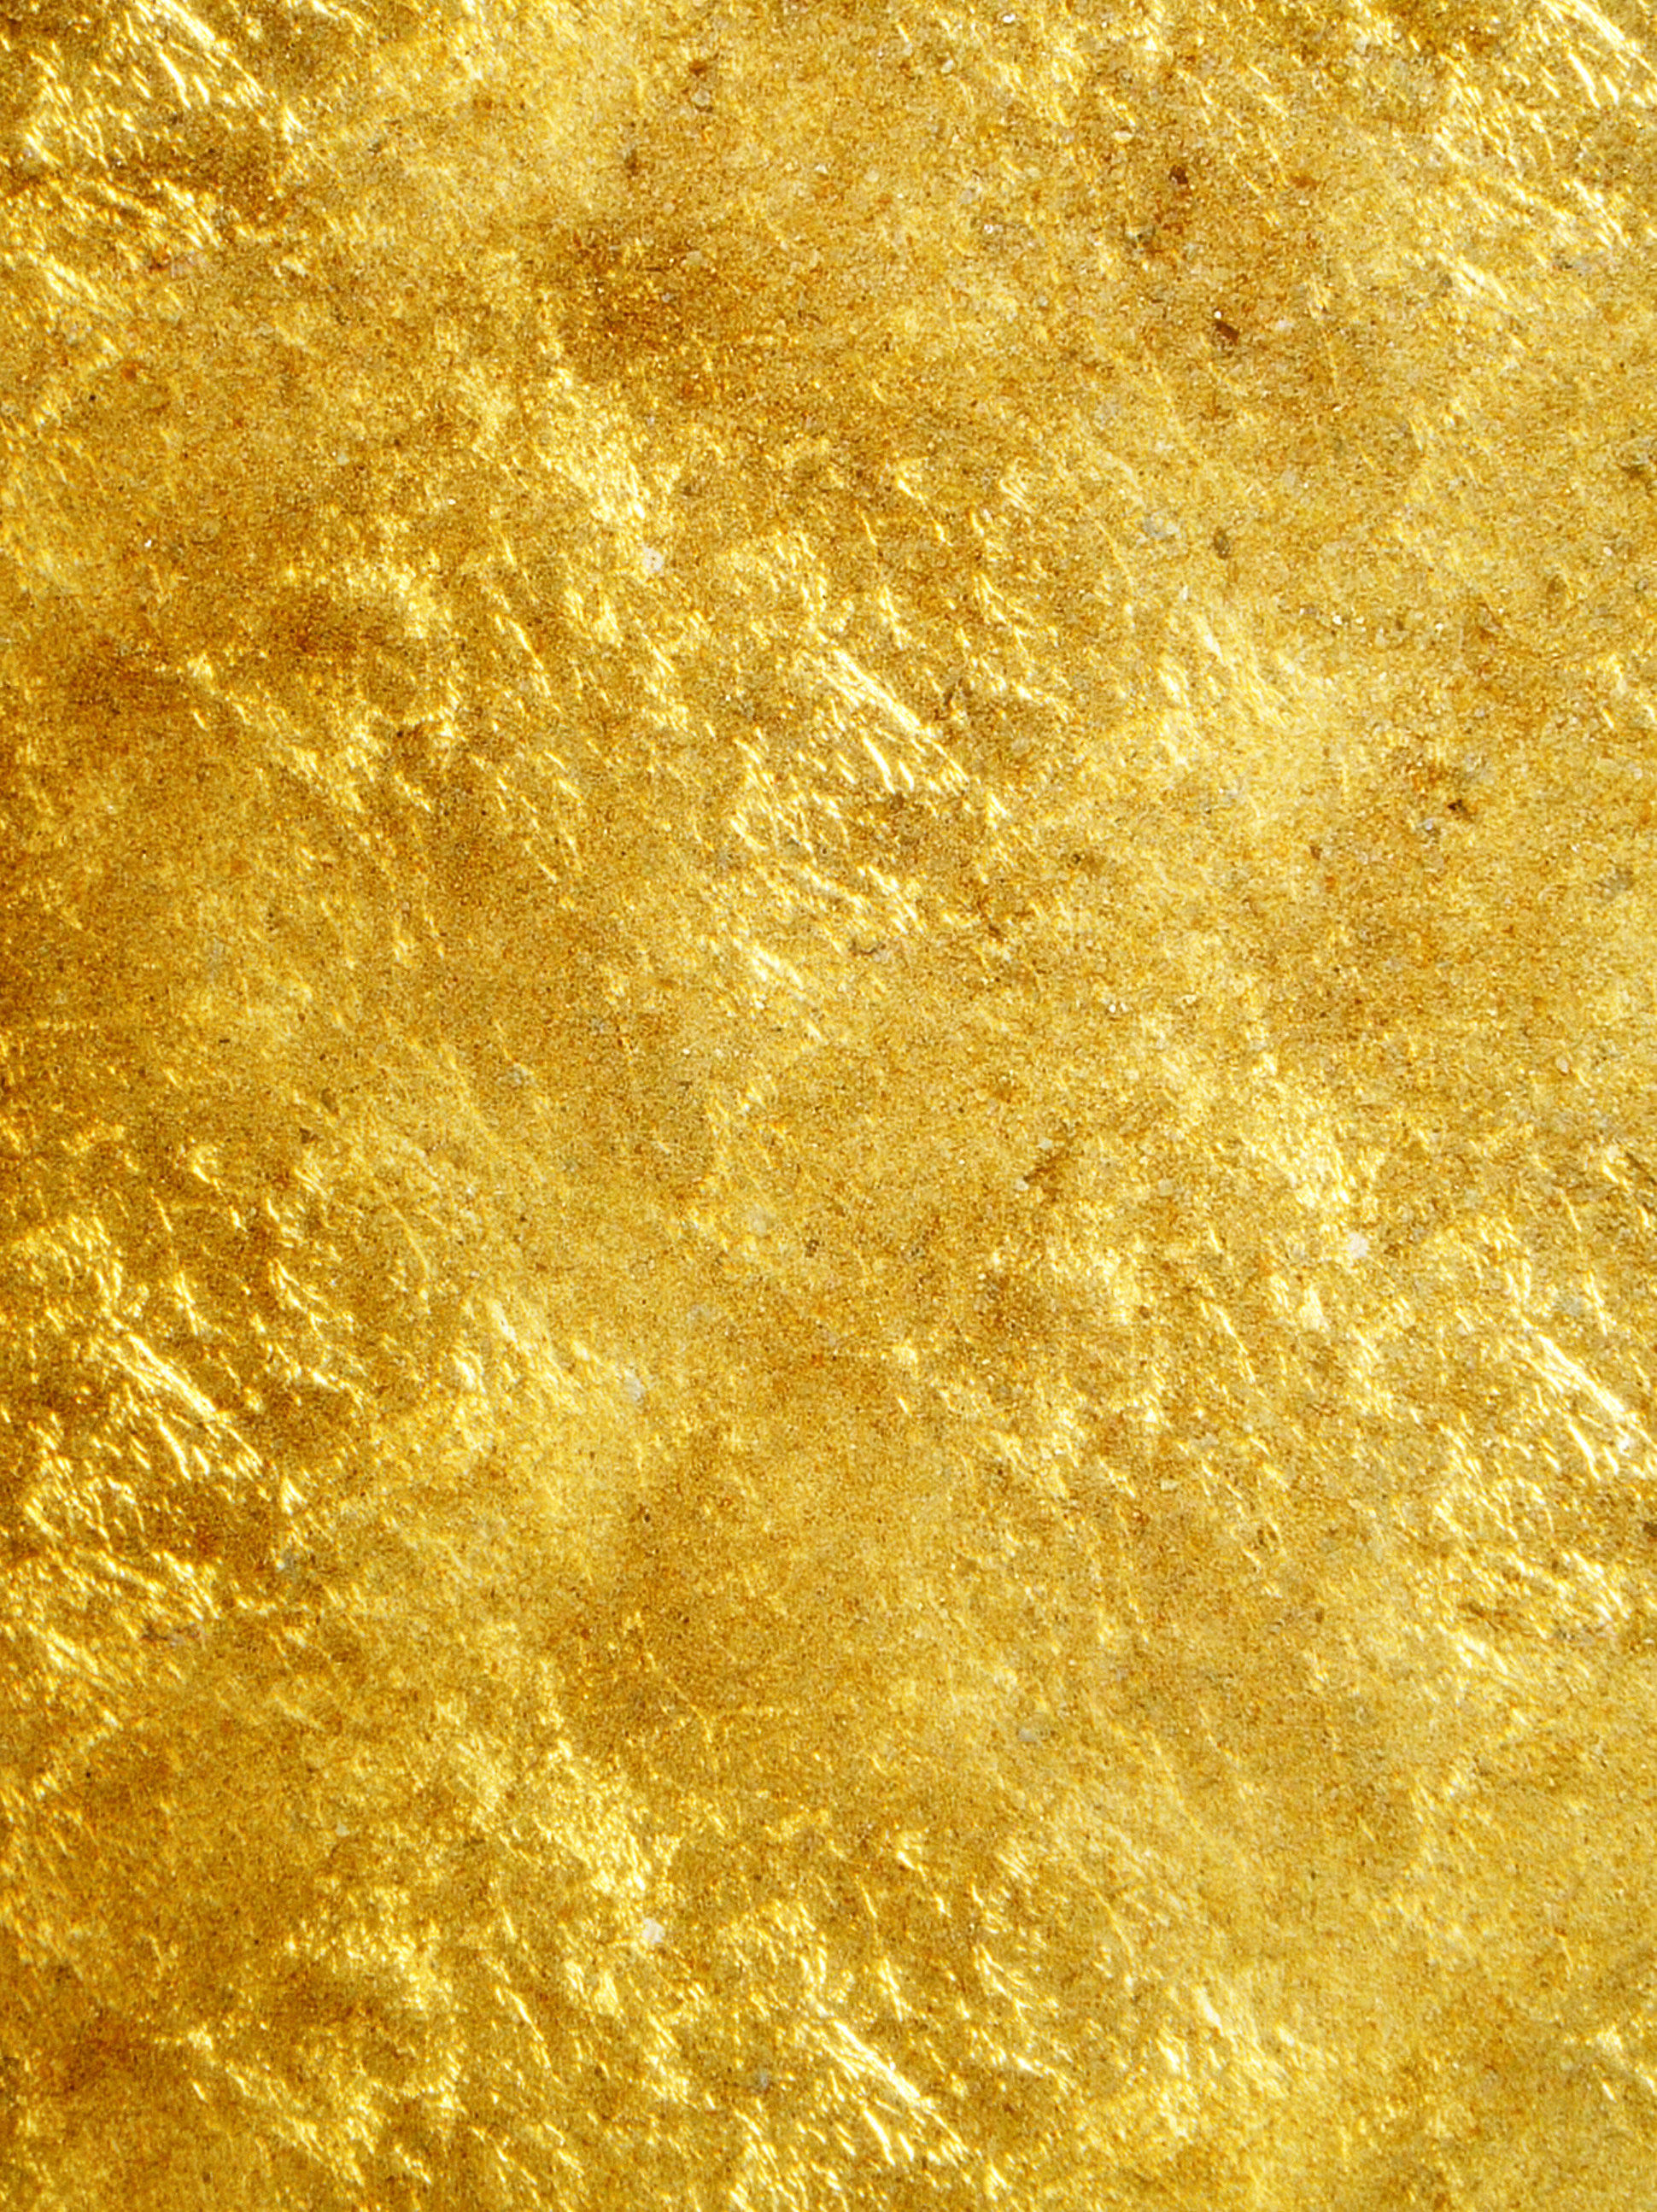 Скачать текстуру в высоком разрешении: gold texture, текстура золота, золото,  золотой фон, background